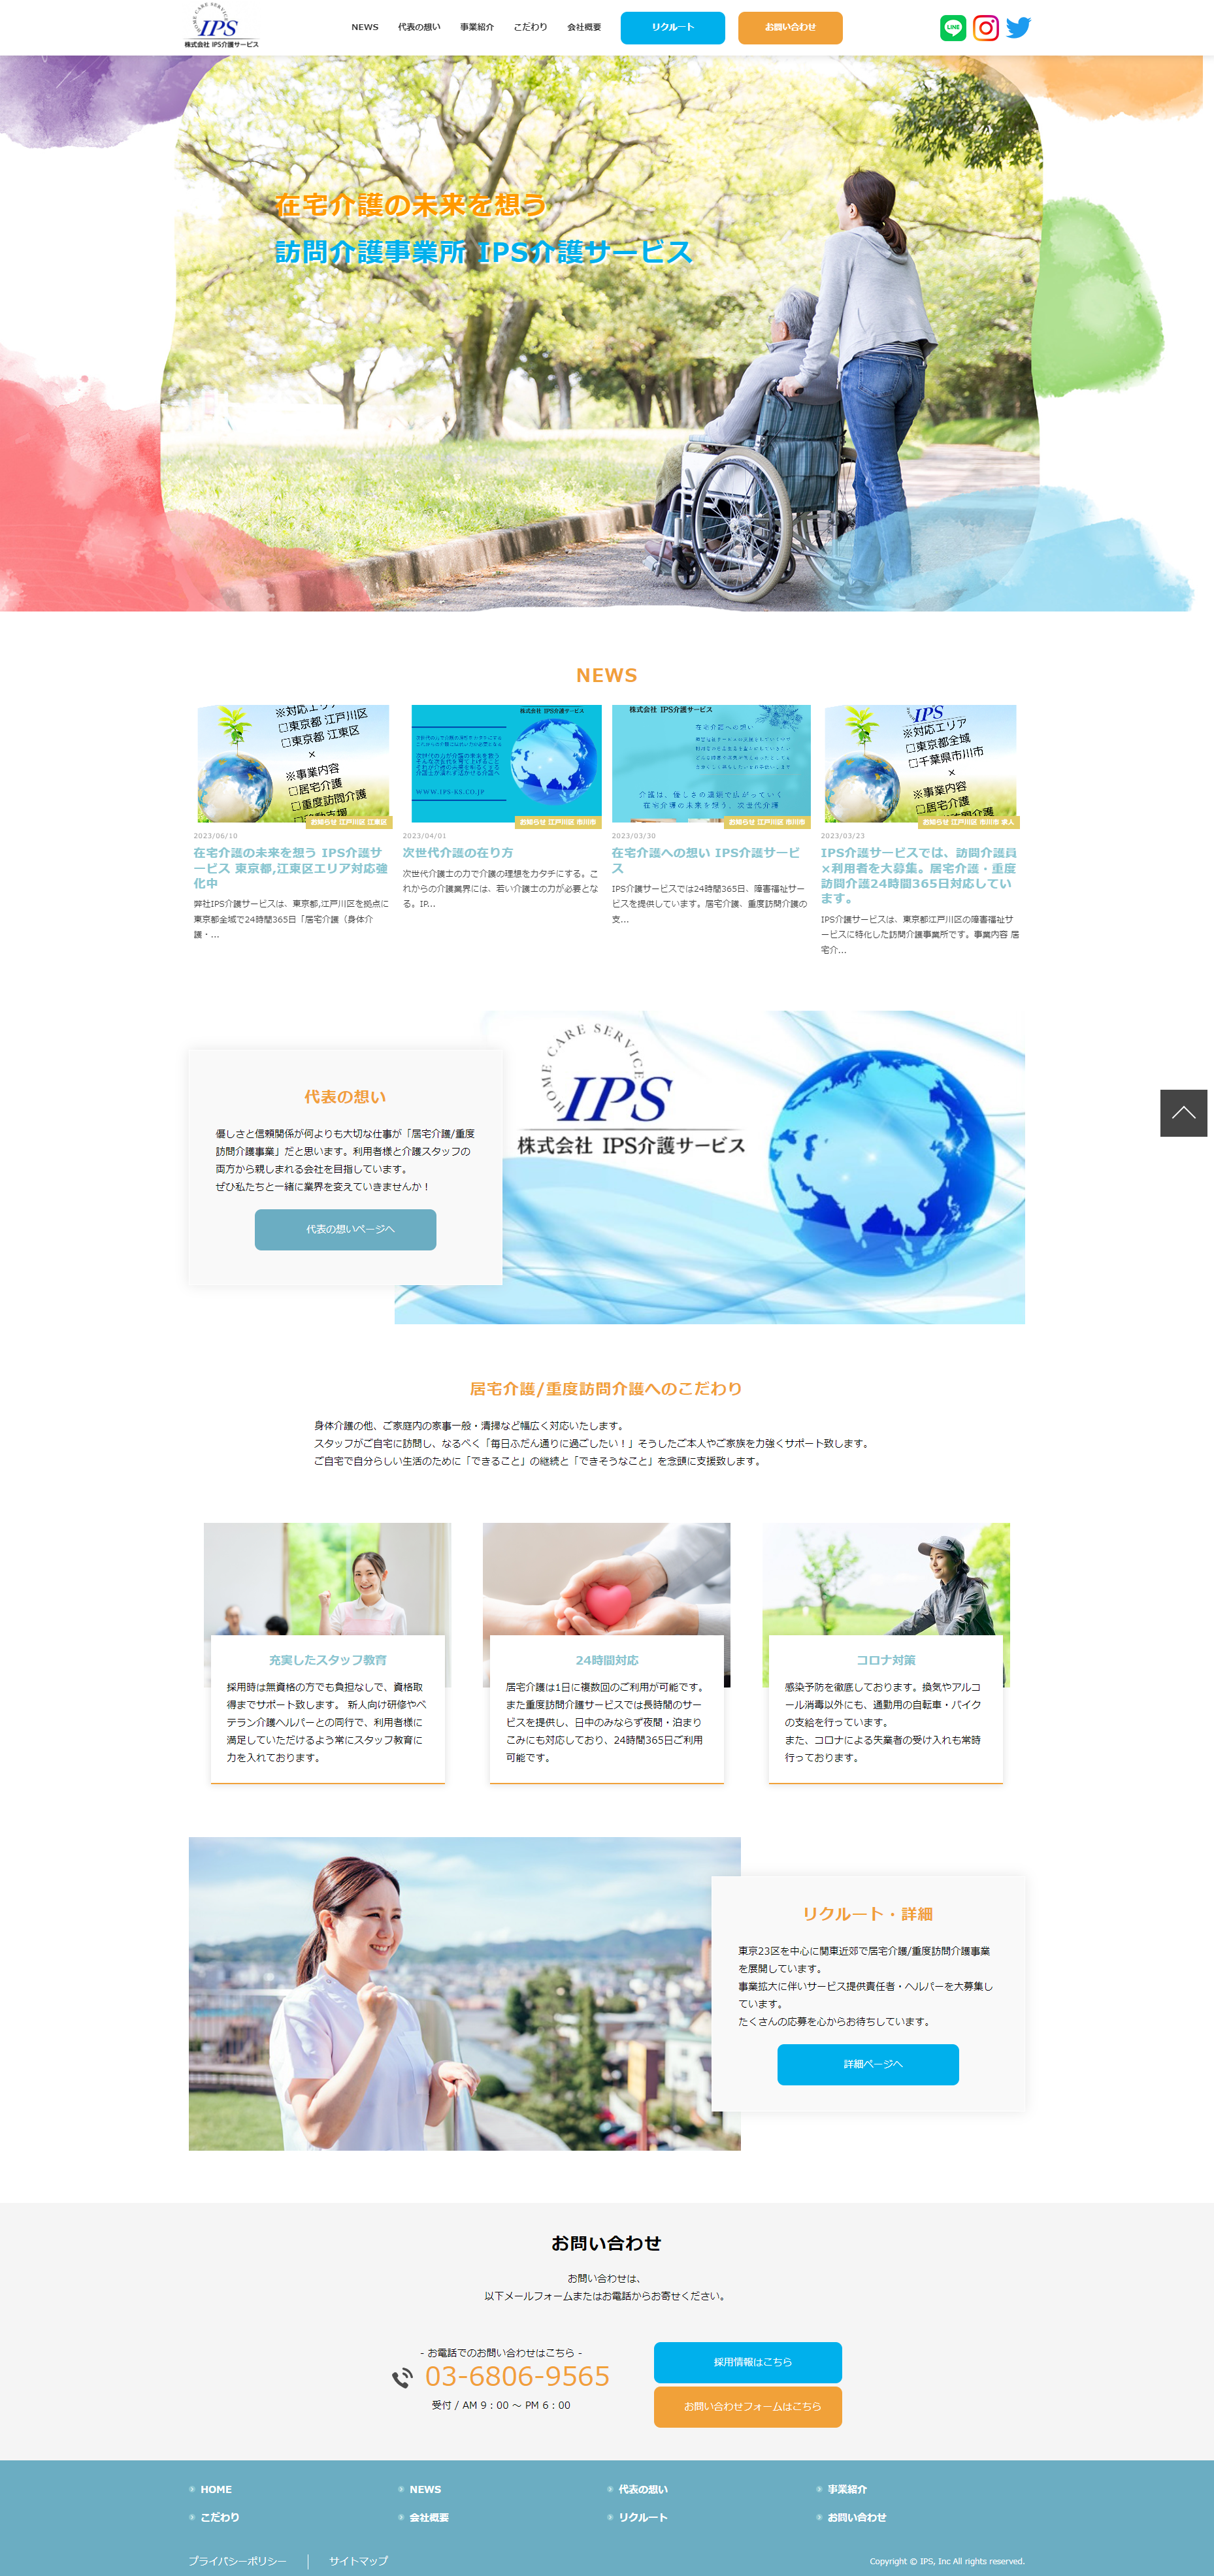 株式会社IPS介護サービス 様トップページ